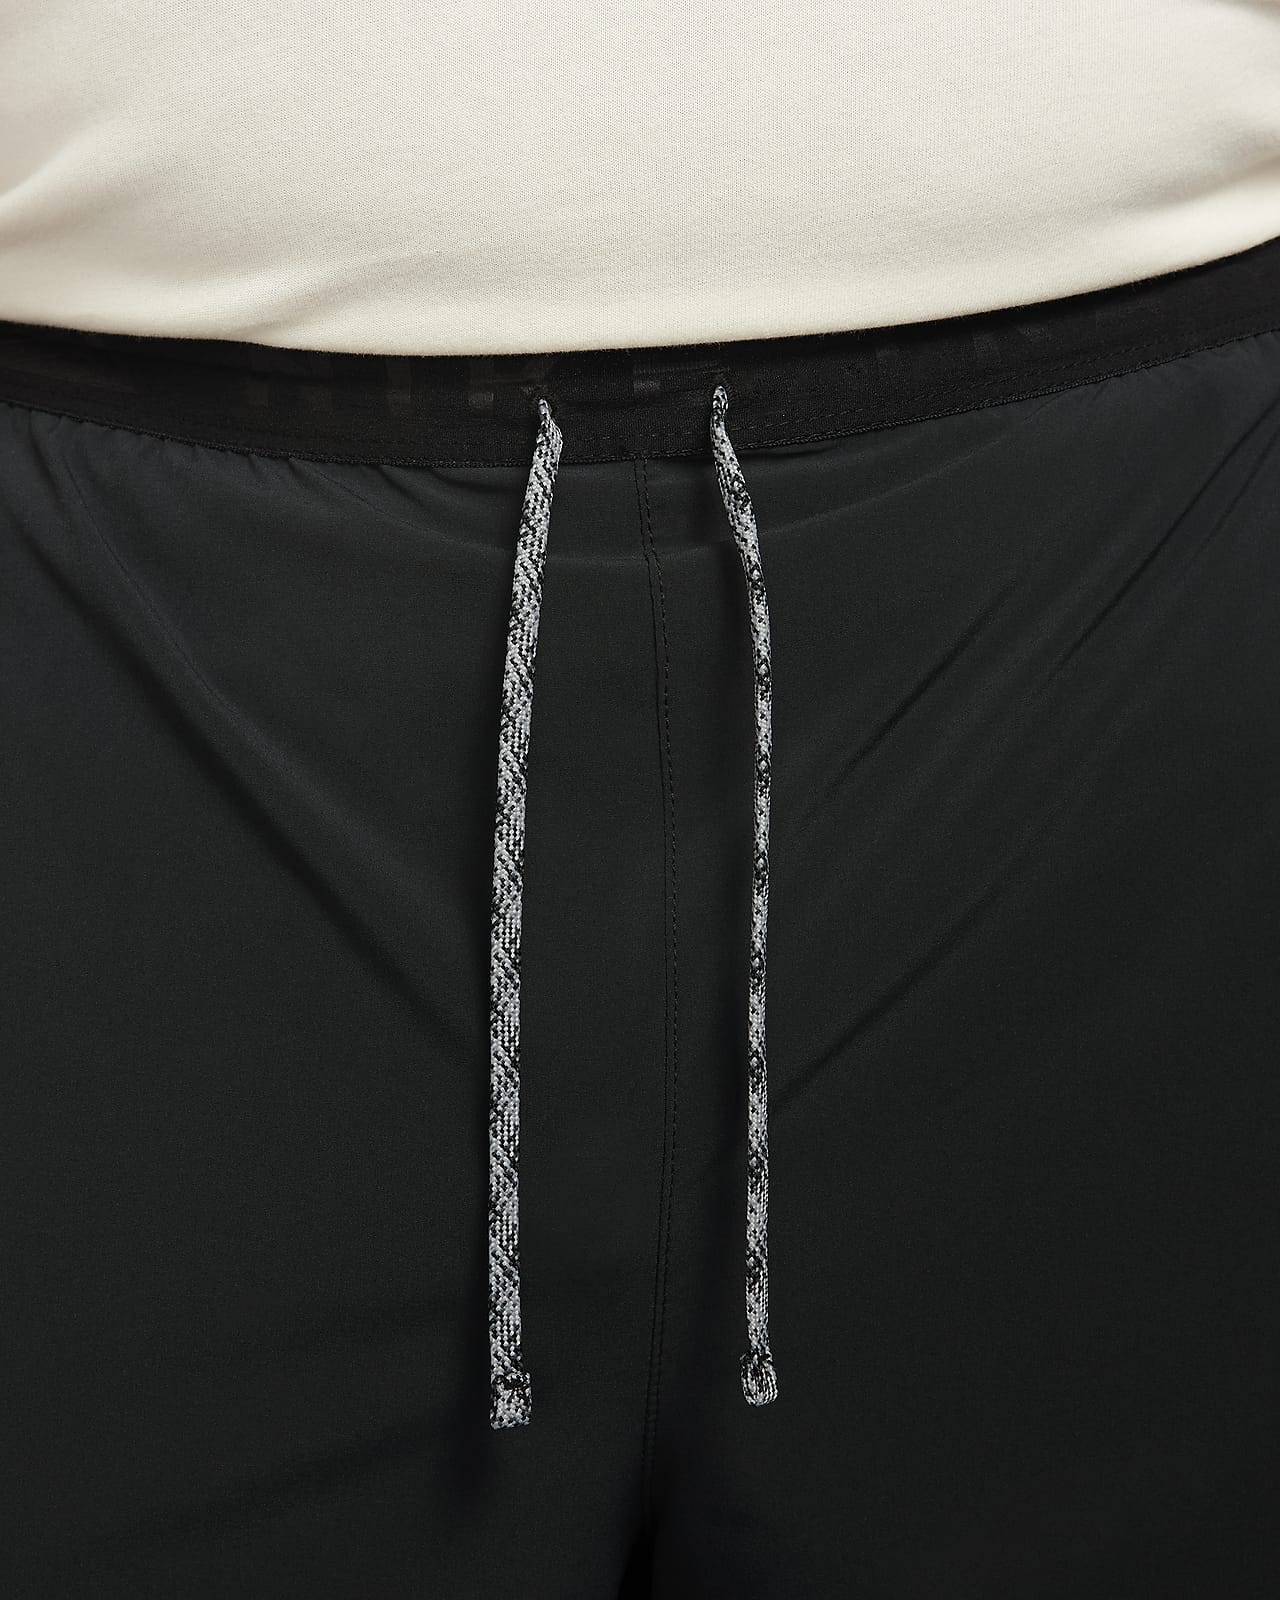 Pantalon Nike Dri-Fit Trail Dawn Range Noir